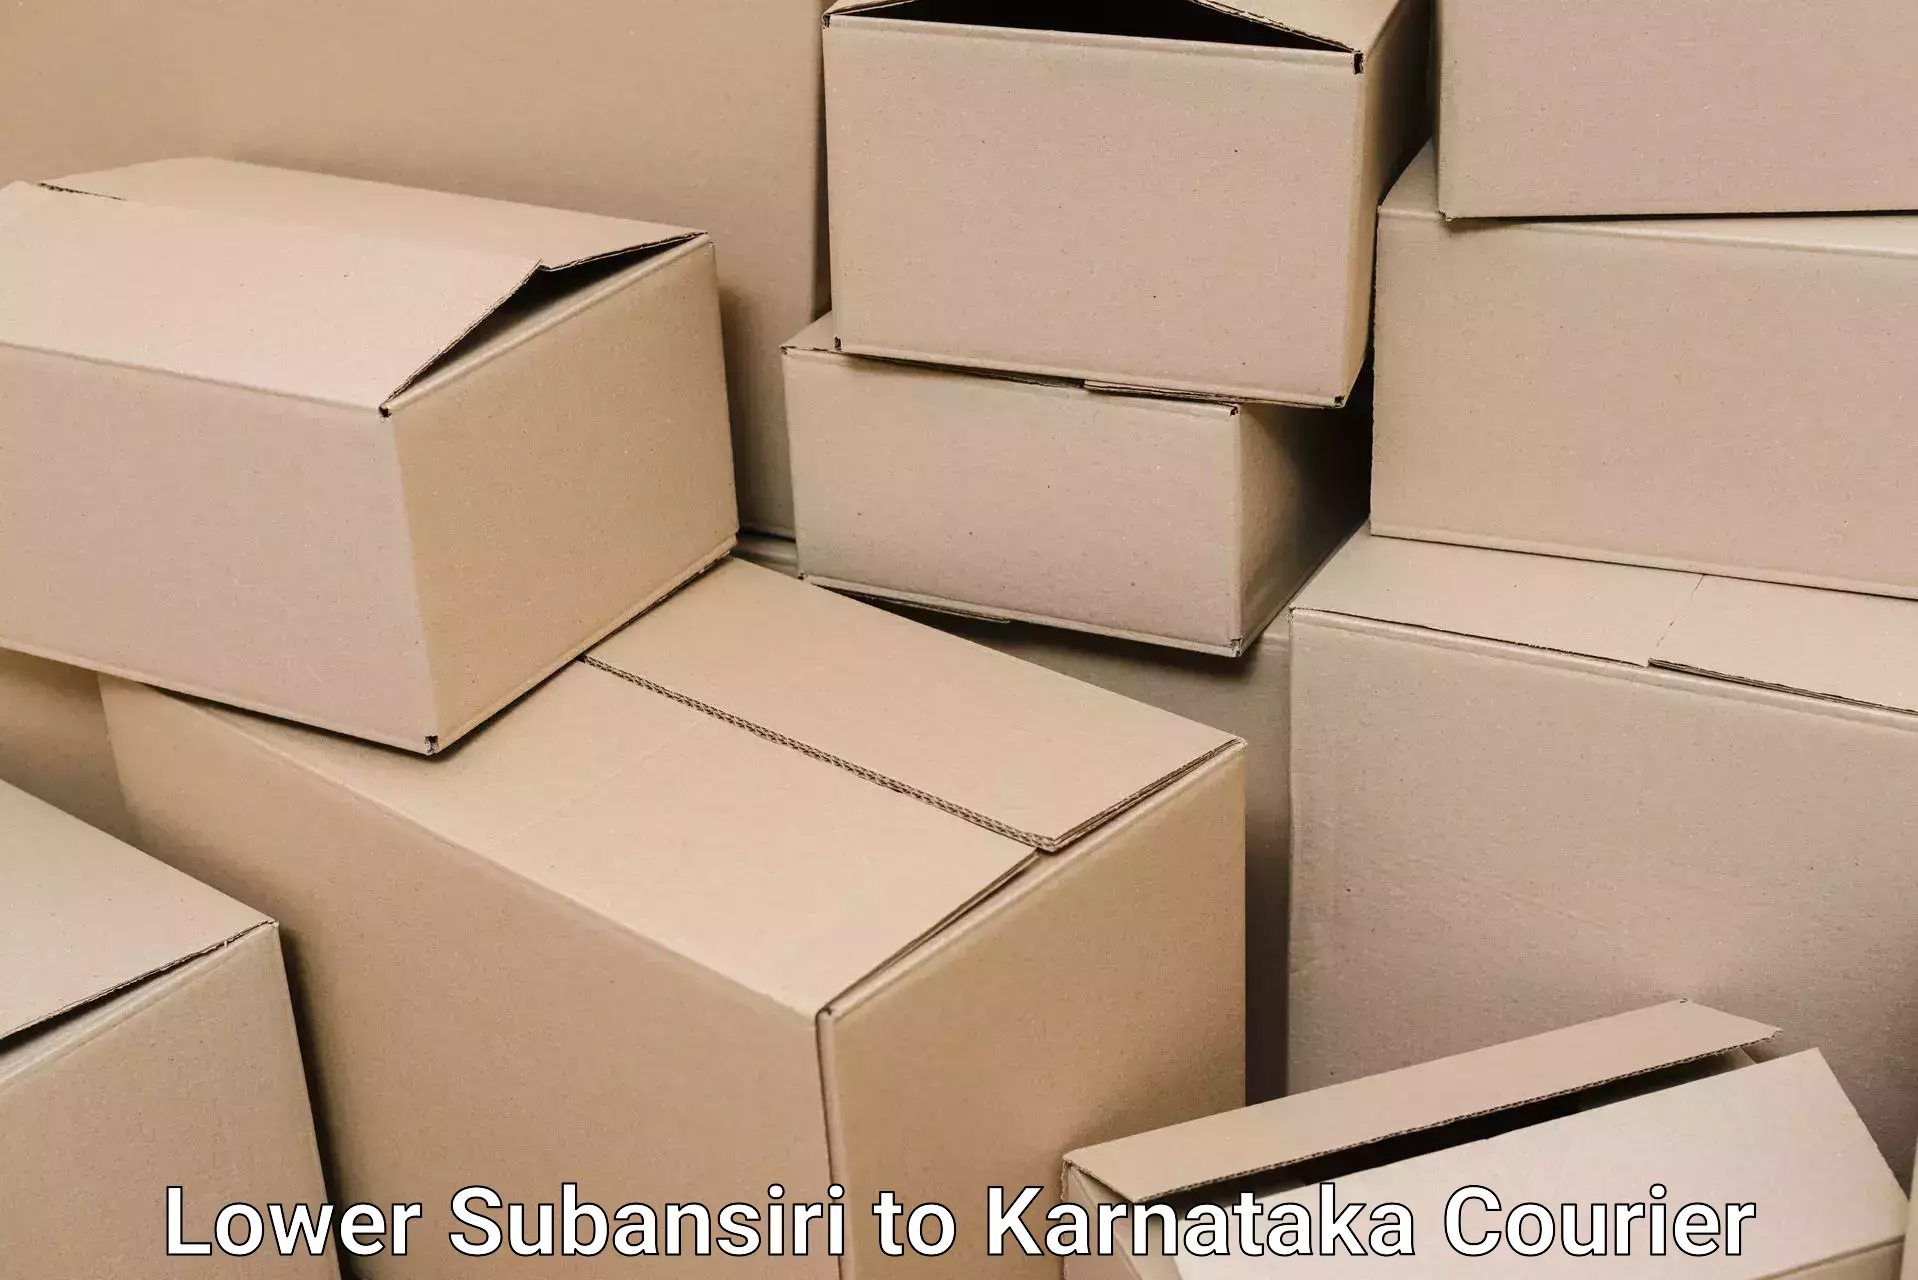 Furniture moving services in Lower Subansiri to Karnataka